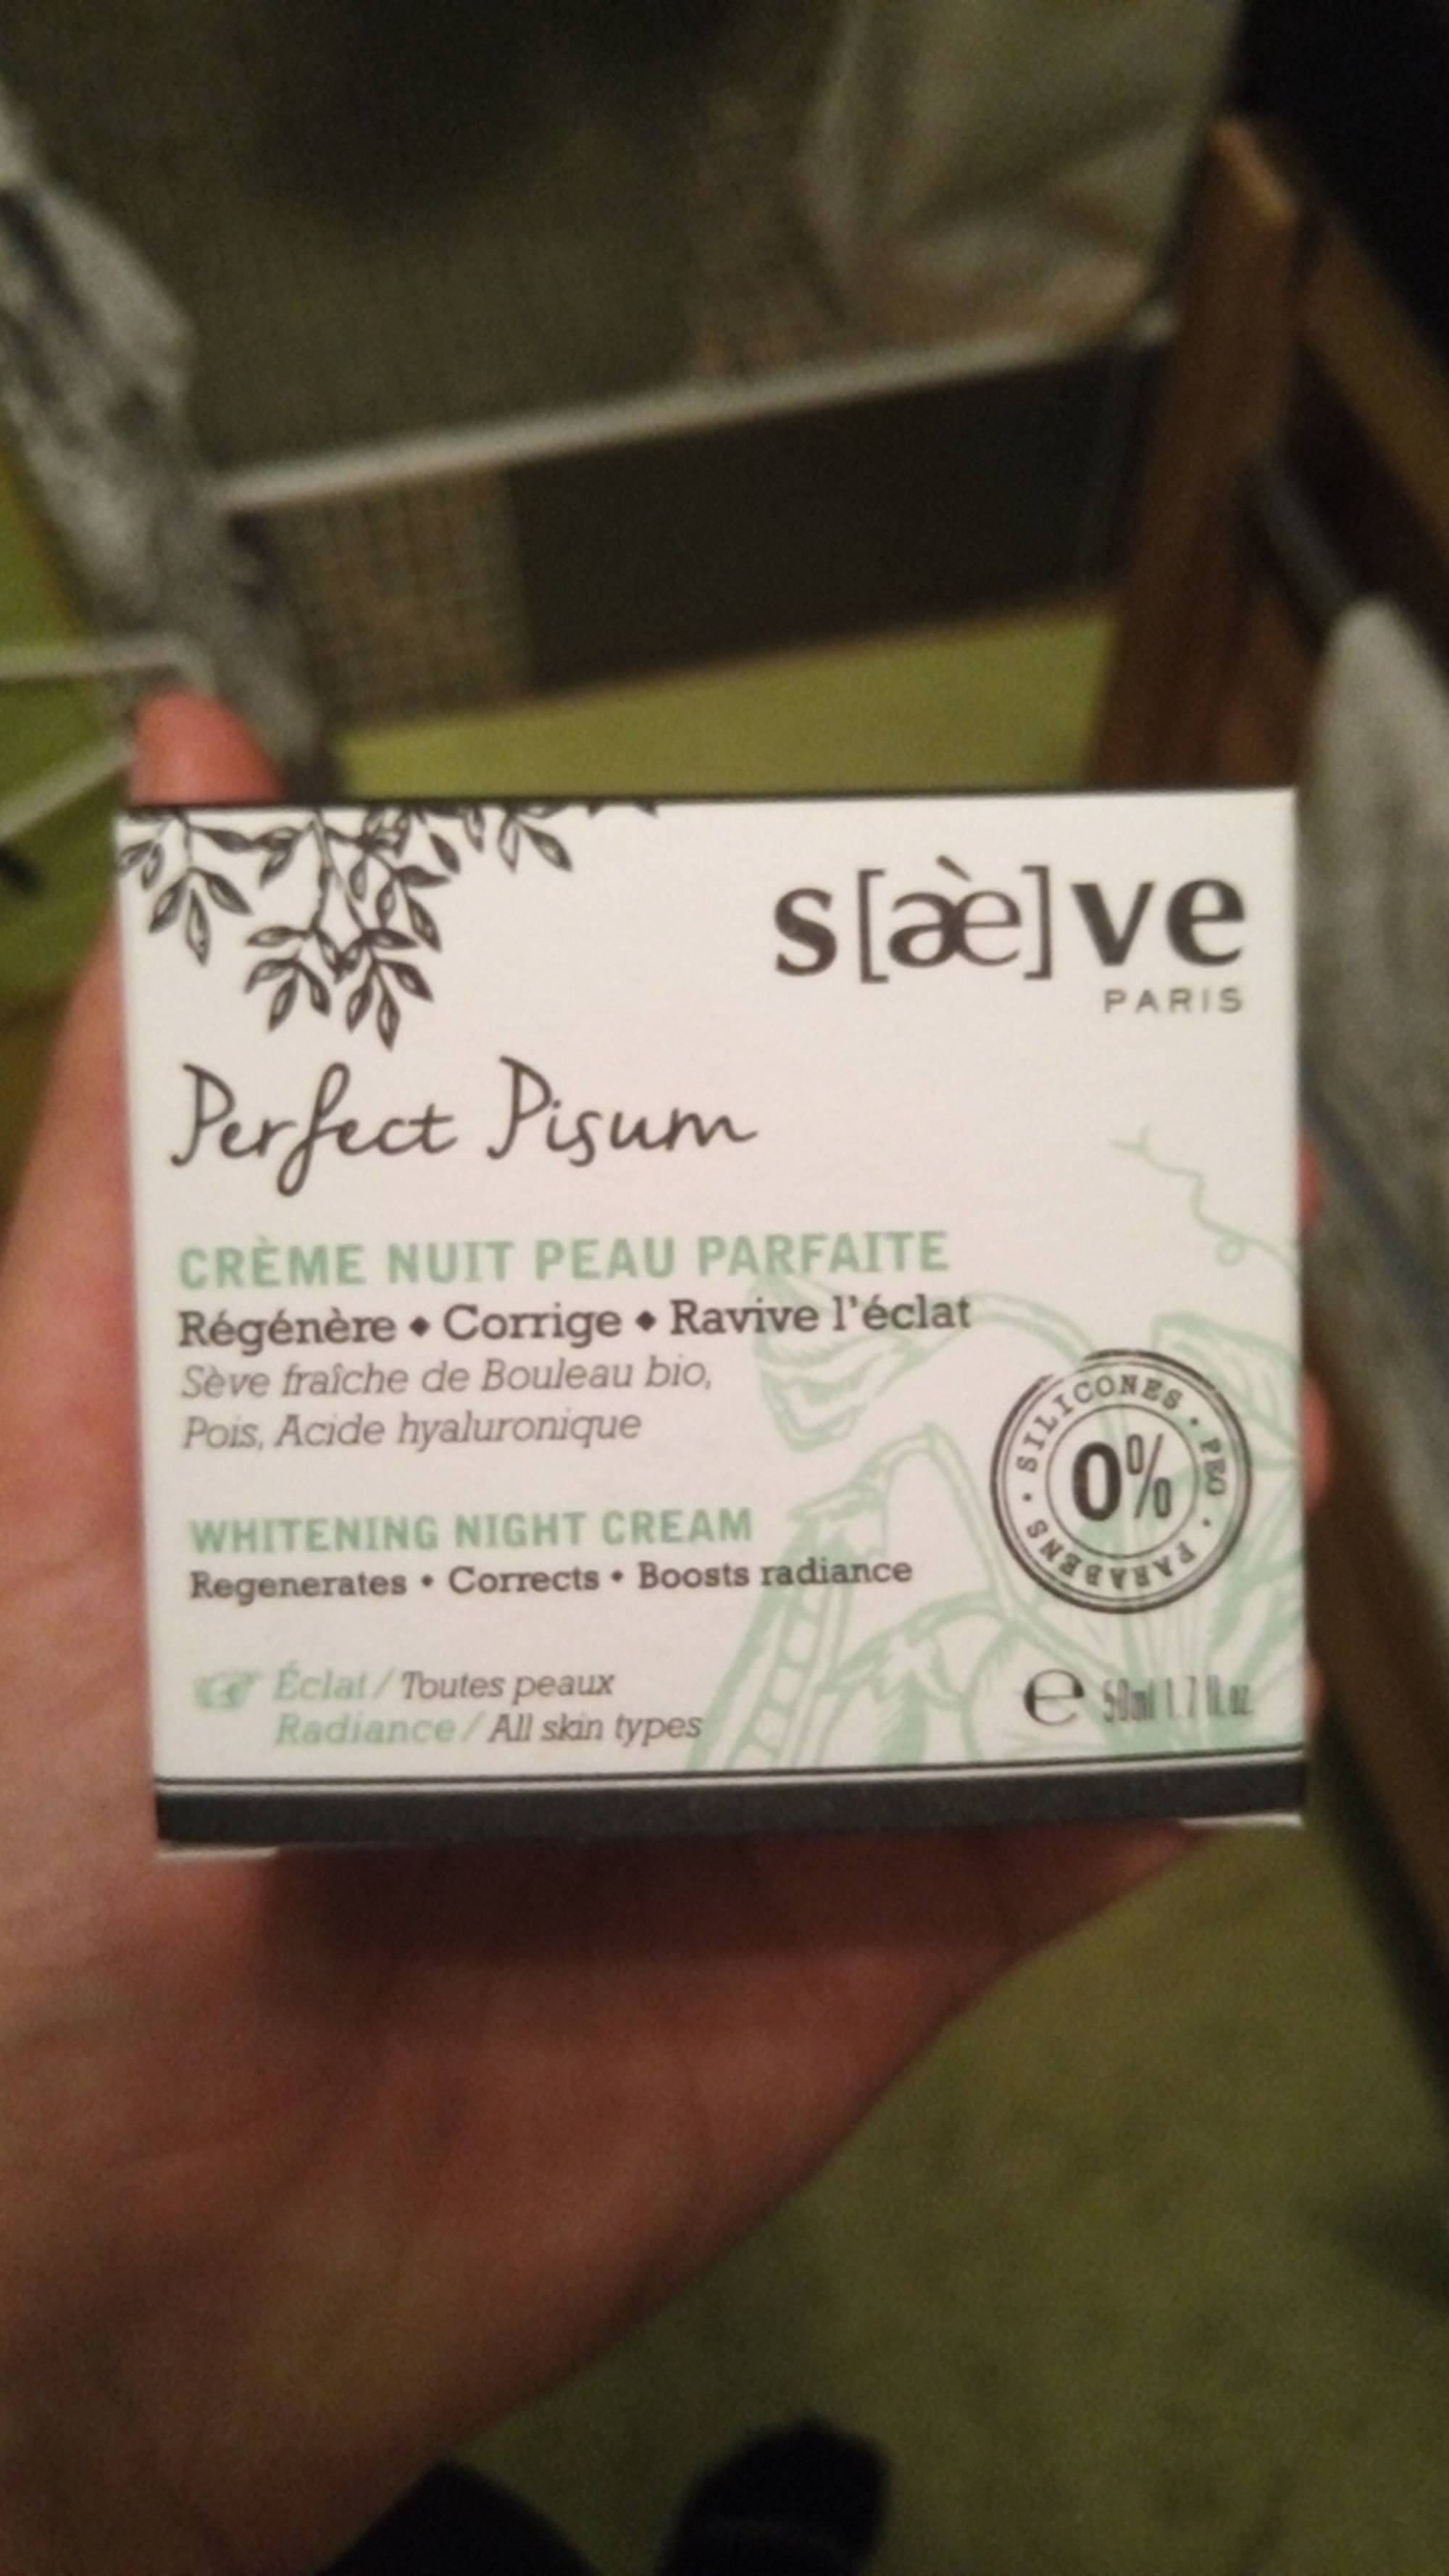 SAÈVE - Perfect pisum - Crème nuit peau parfaite